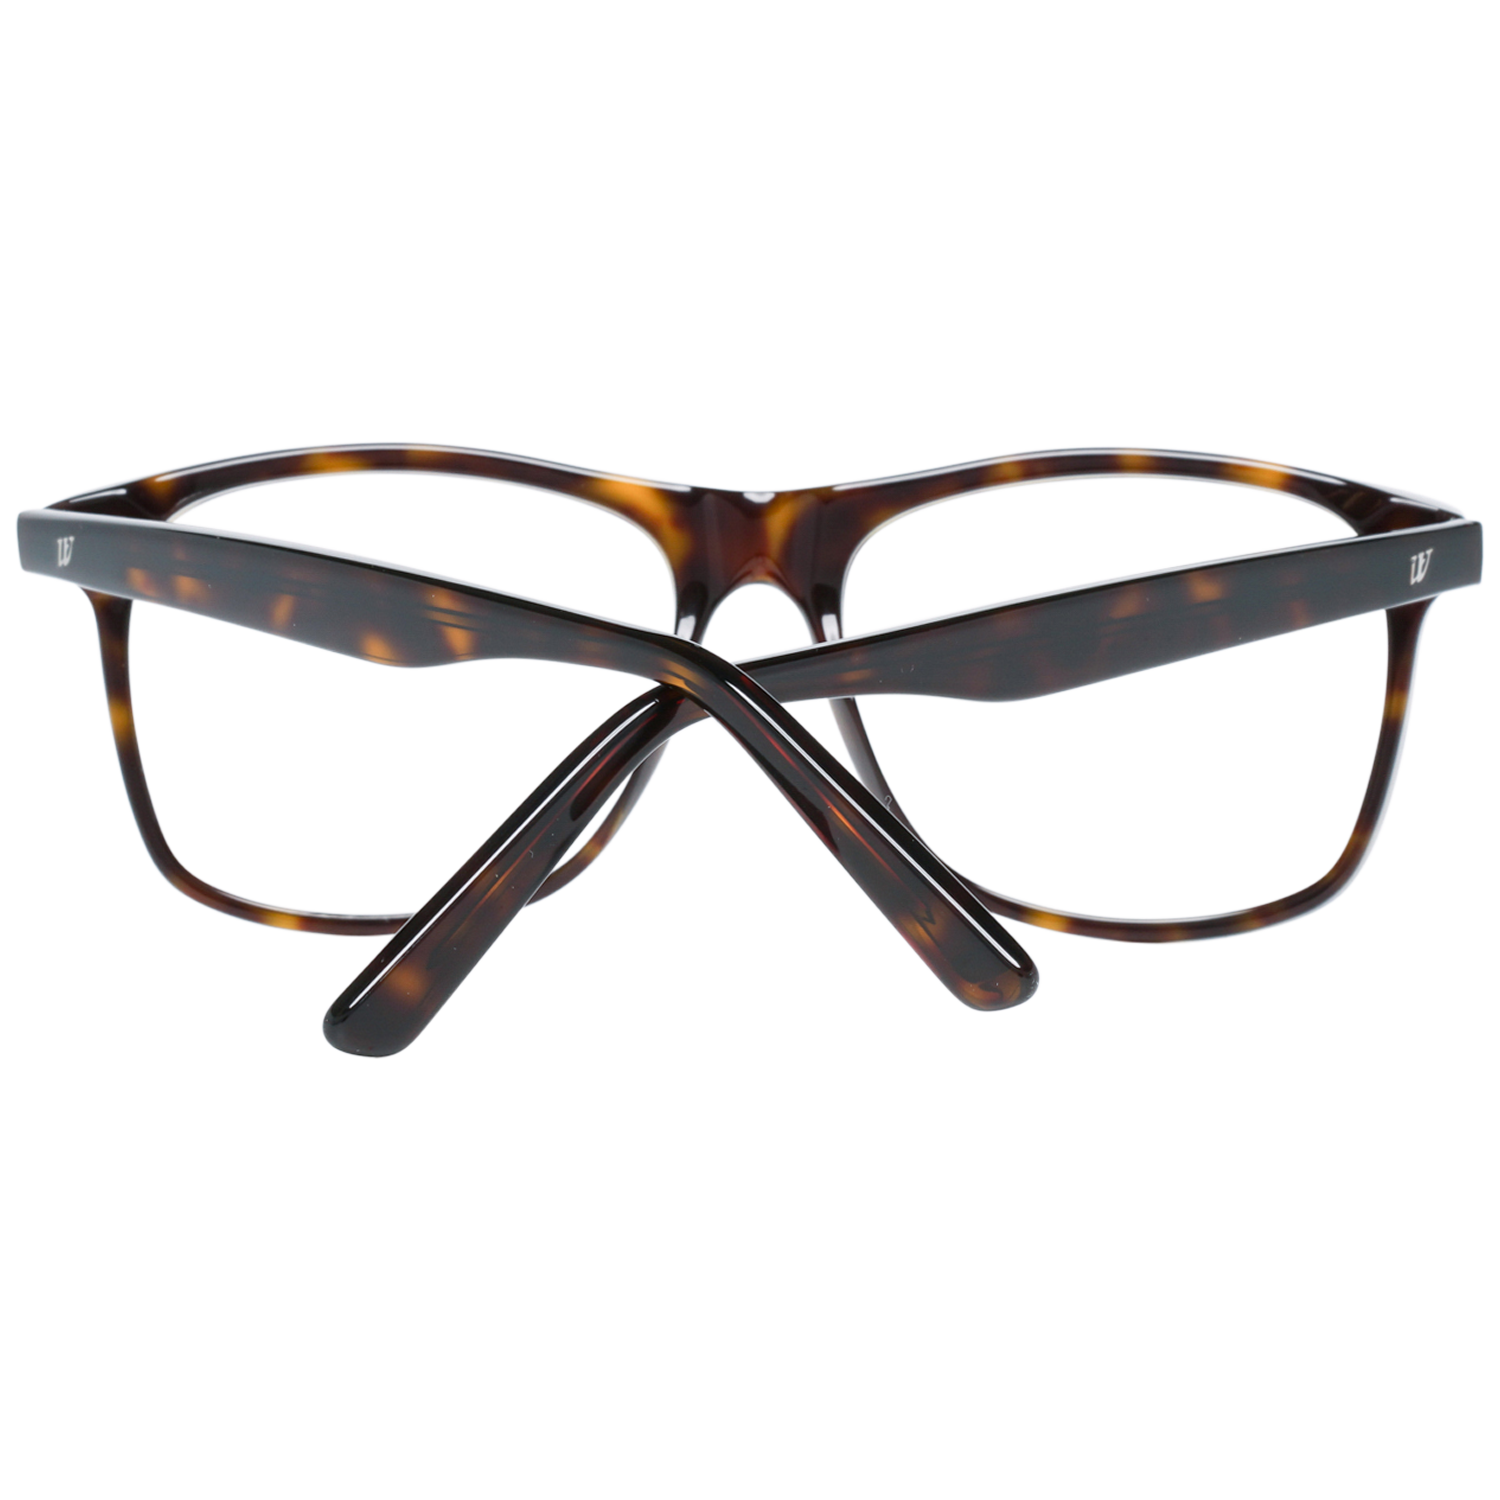 Web Frames Web Glasses Optical Frame WE5152 052 55 Eyeglasses Eyewear UK USA Australia 